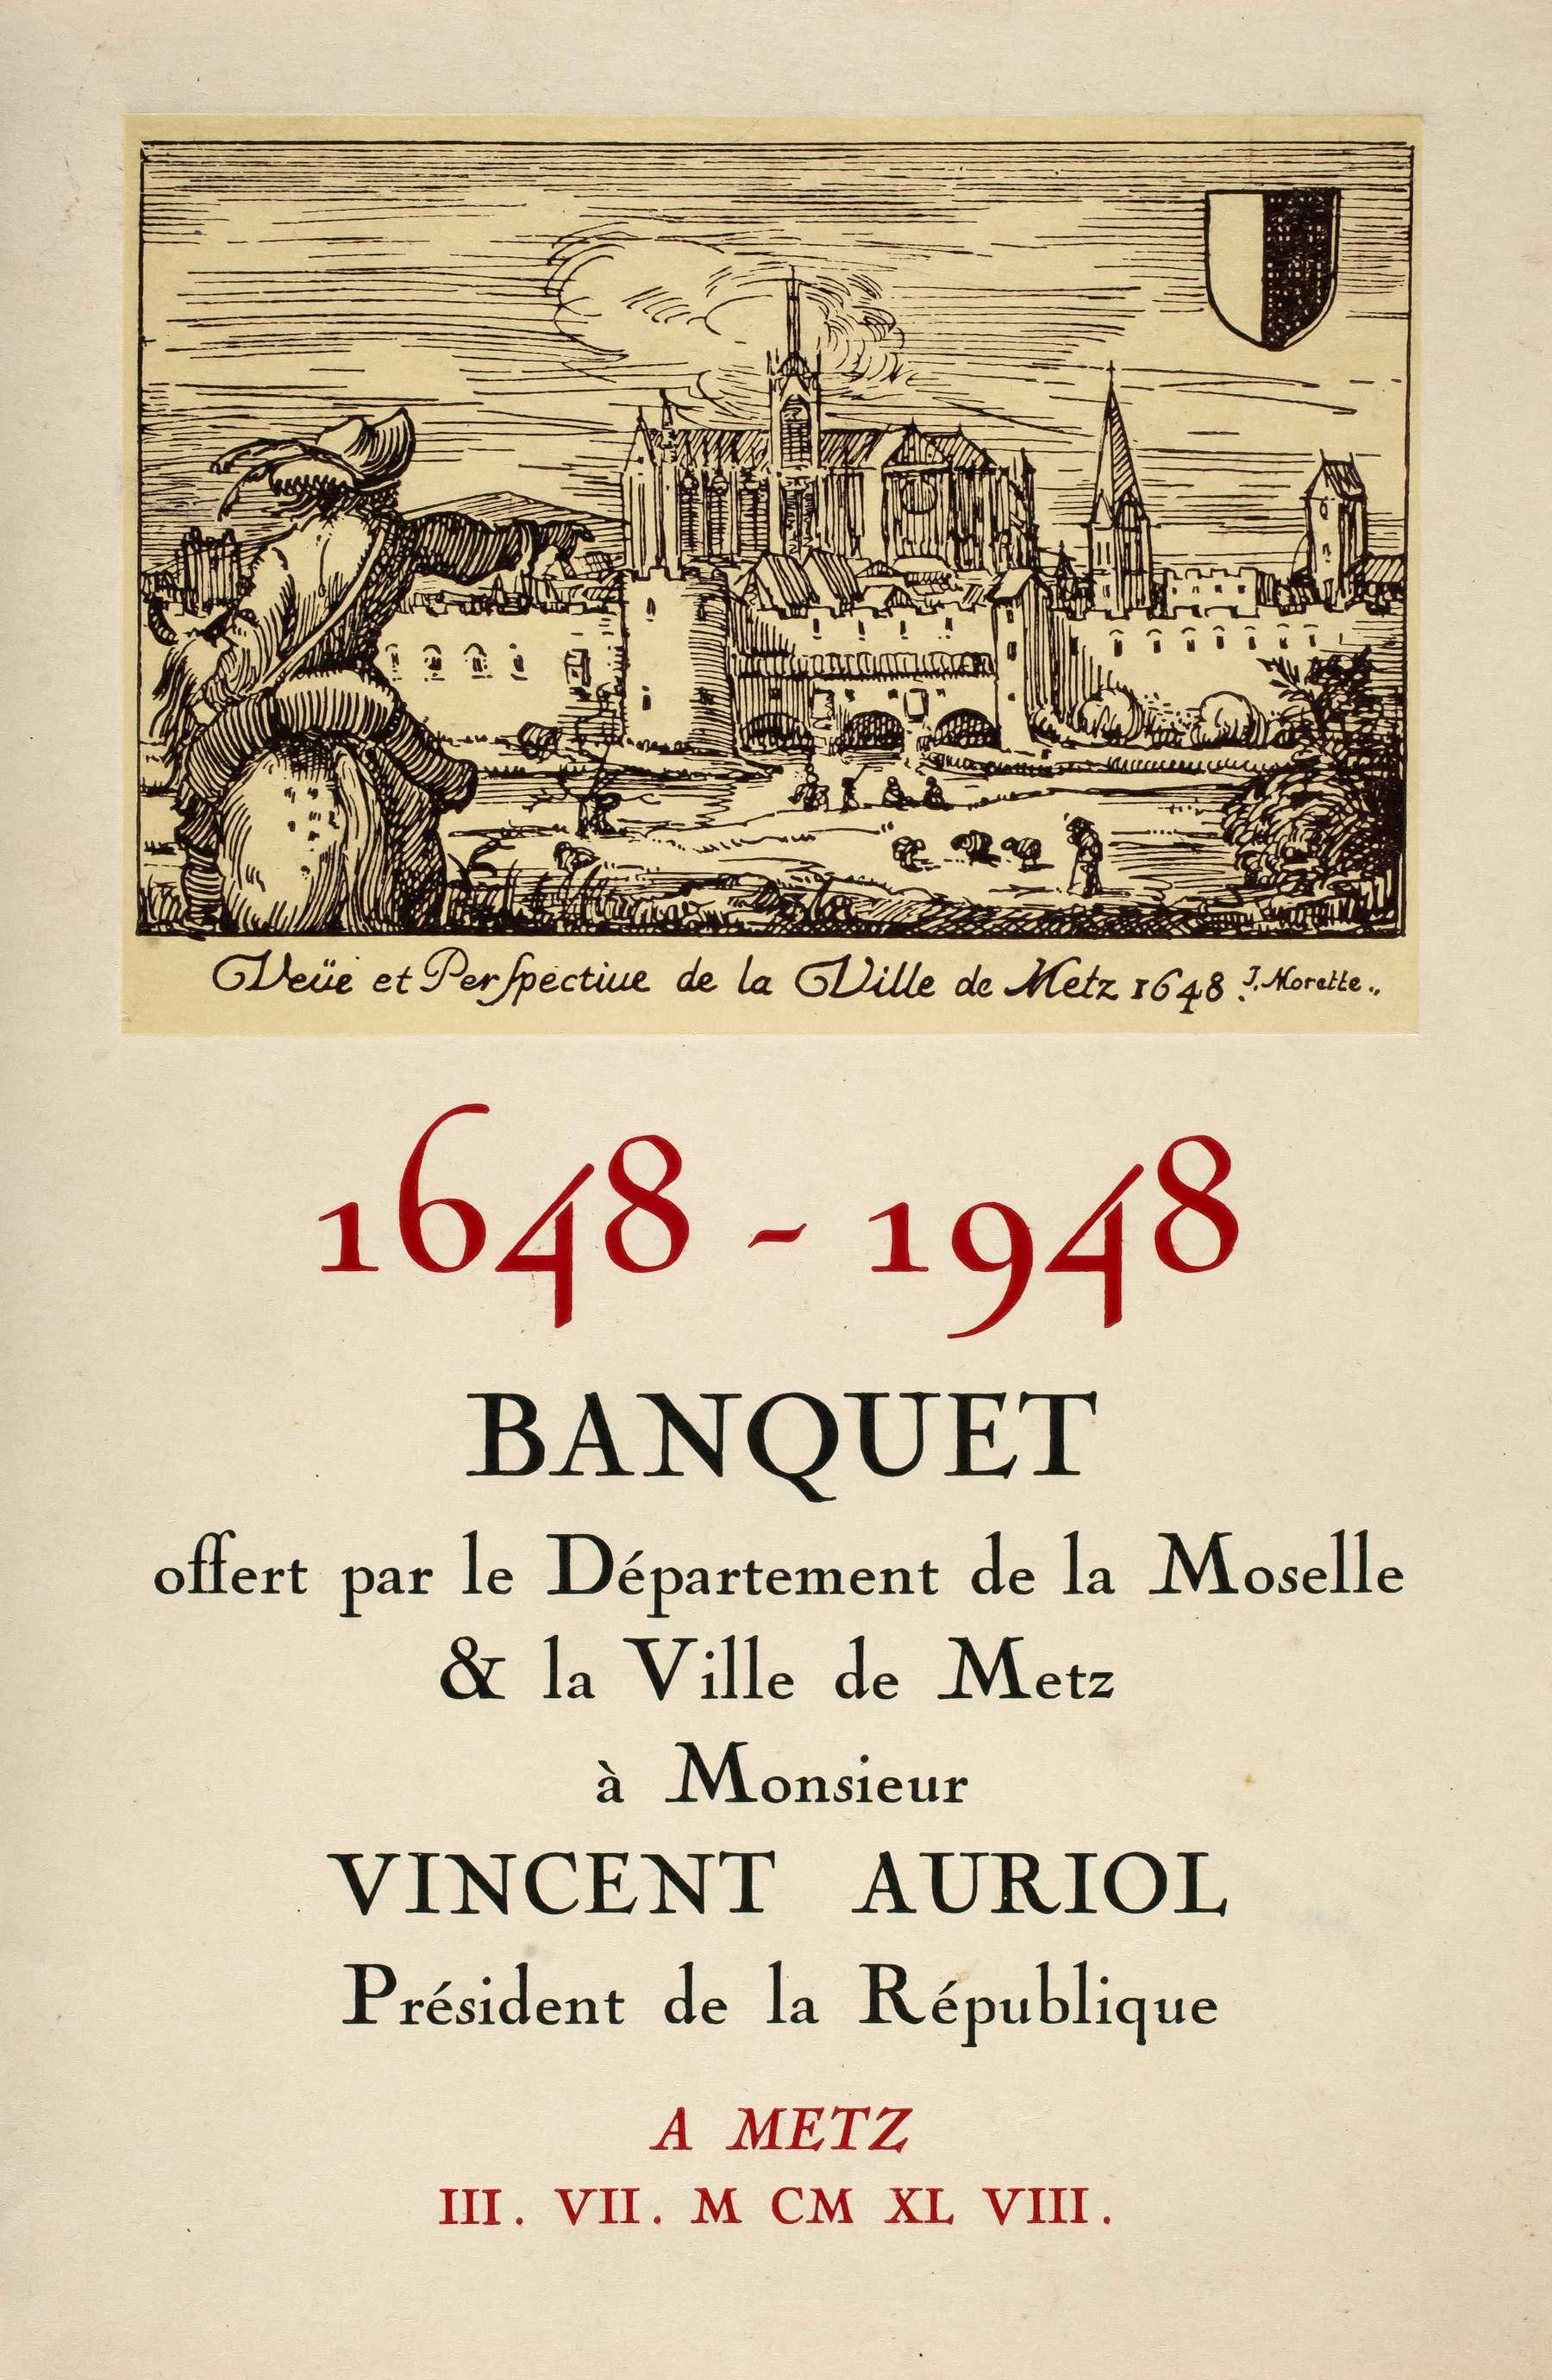 Contenu du 1648-1948 – Banquet offert par le Département de la Moselle & la Ville de Metz à Monsieur Vincent Auriol, Président de la République